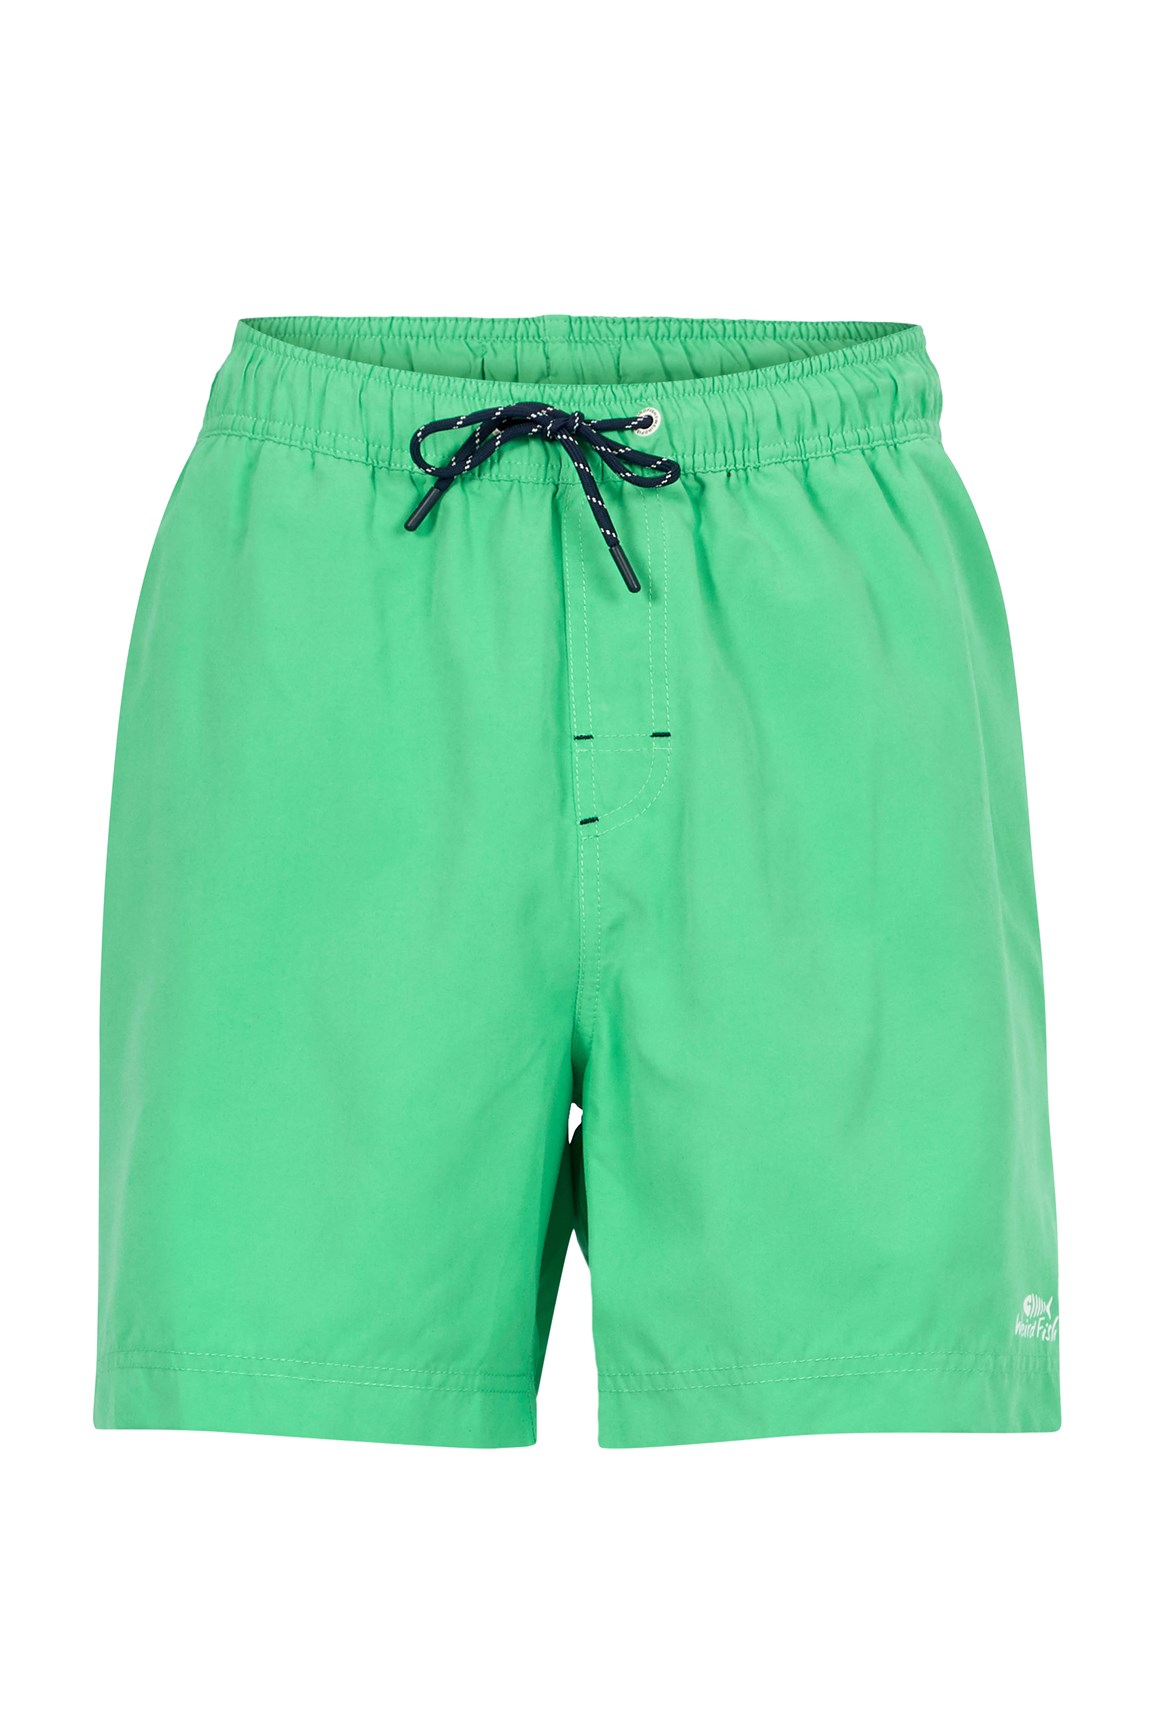 Weird Fish Carlone Swim Shorts Soft Green Size 34